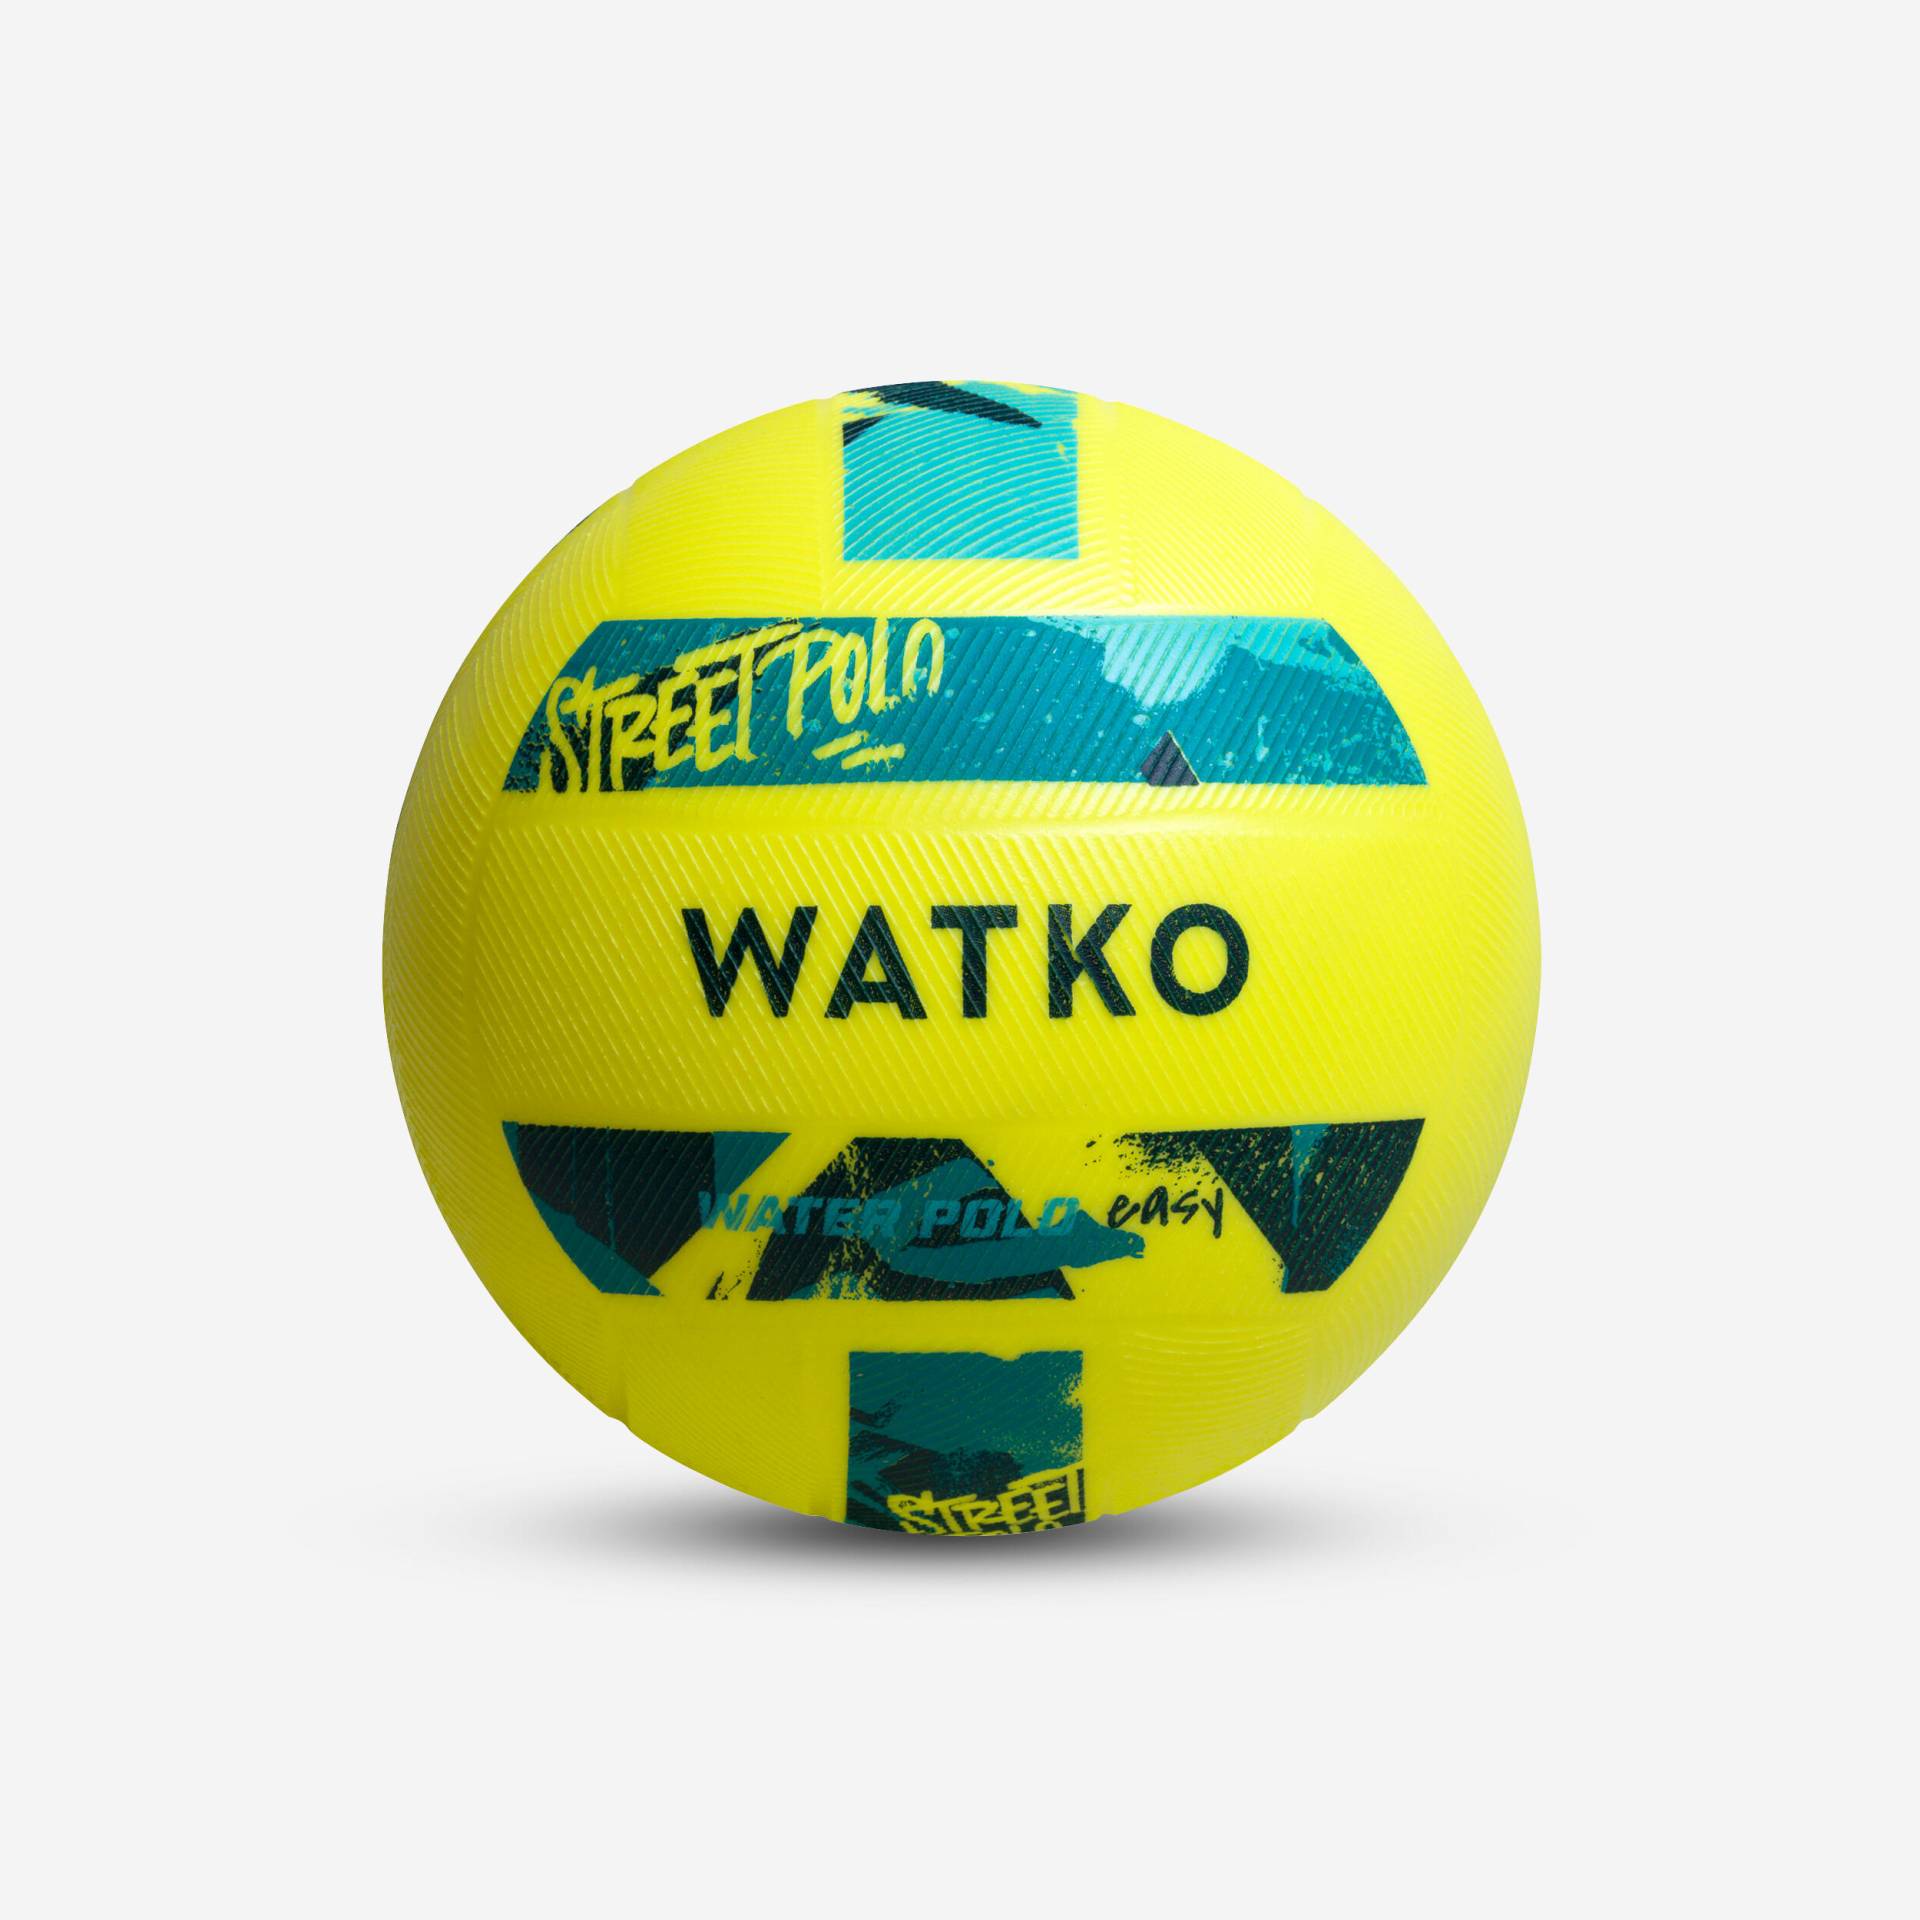 Wasserball Grip groß - Street gelb von WATKO